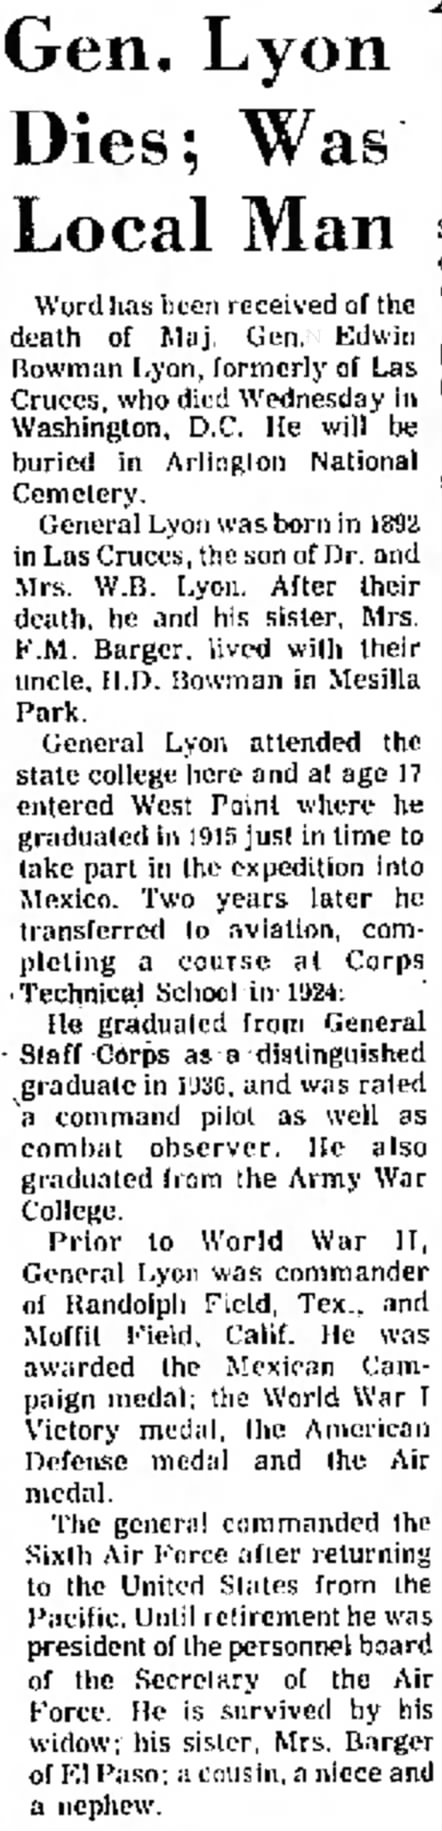 Gen. Lyon Dies; Was Local Man